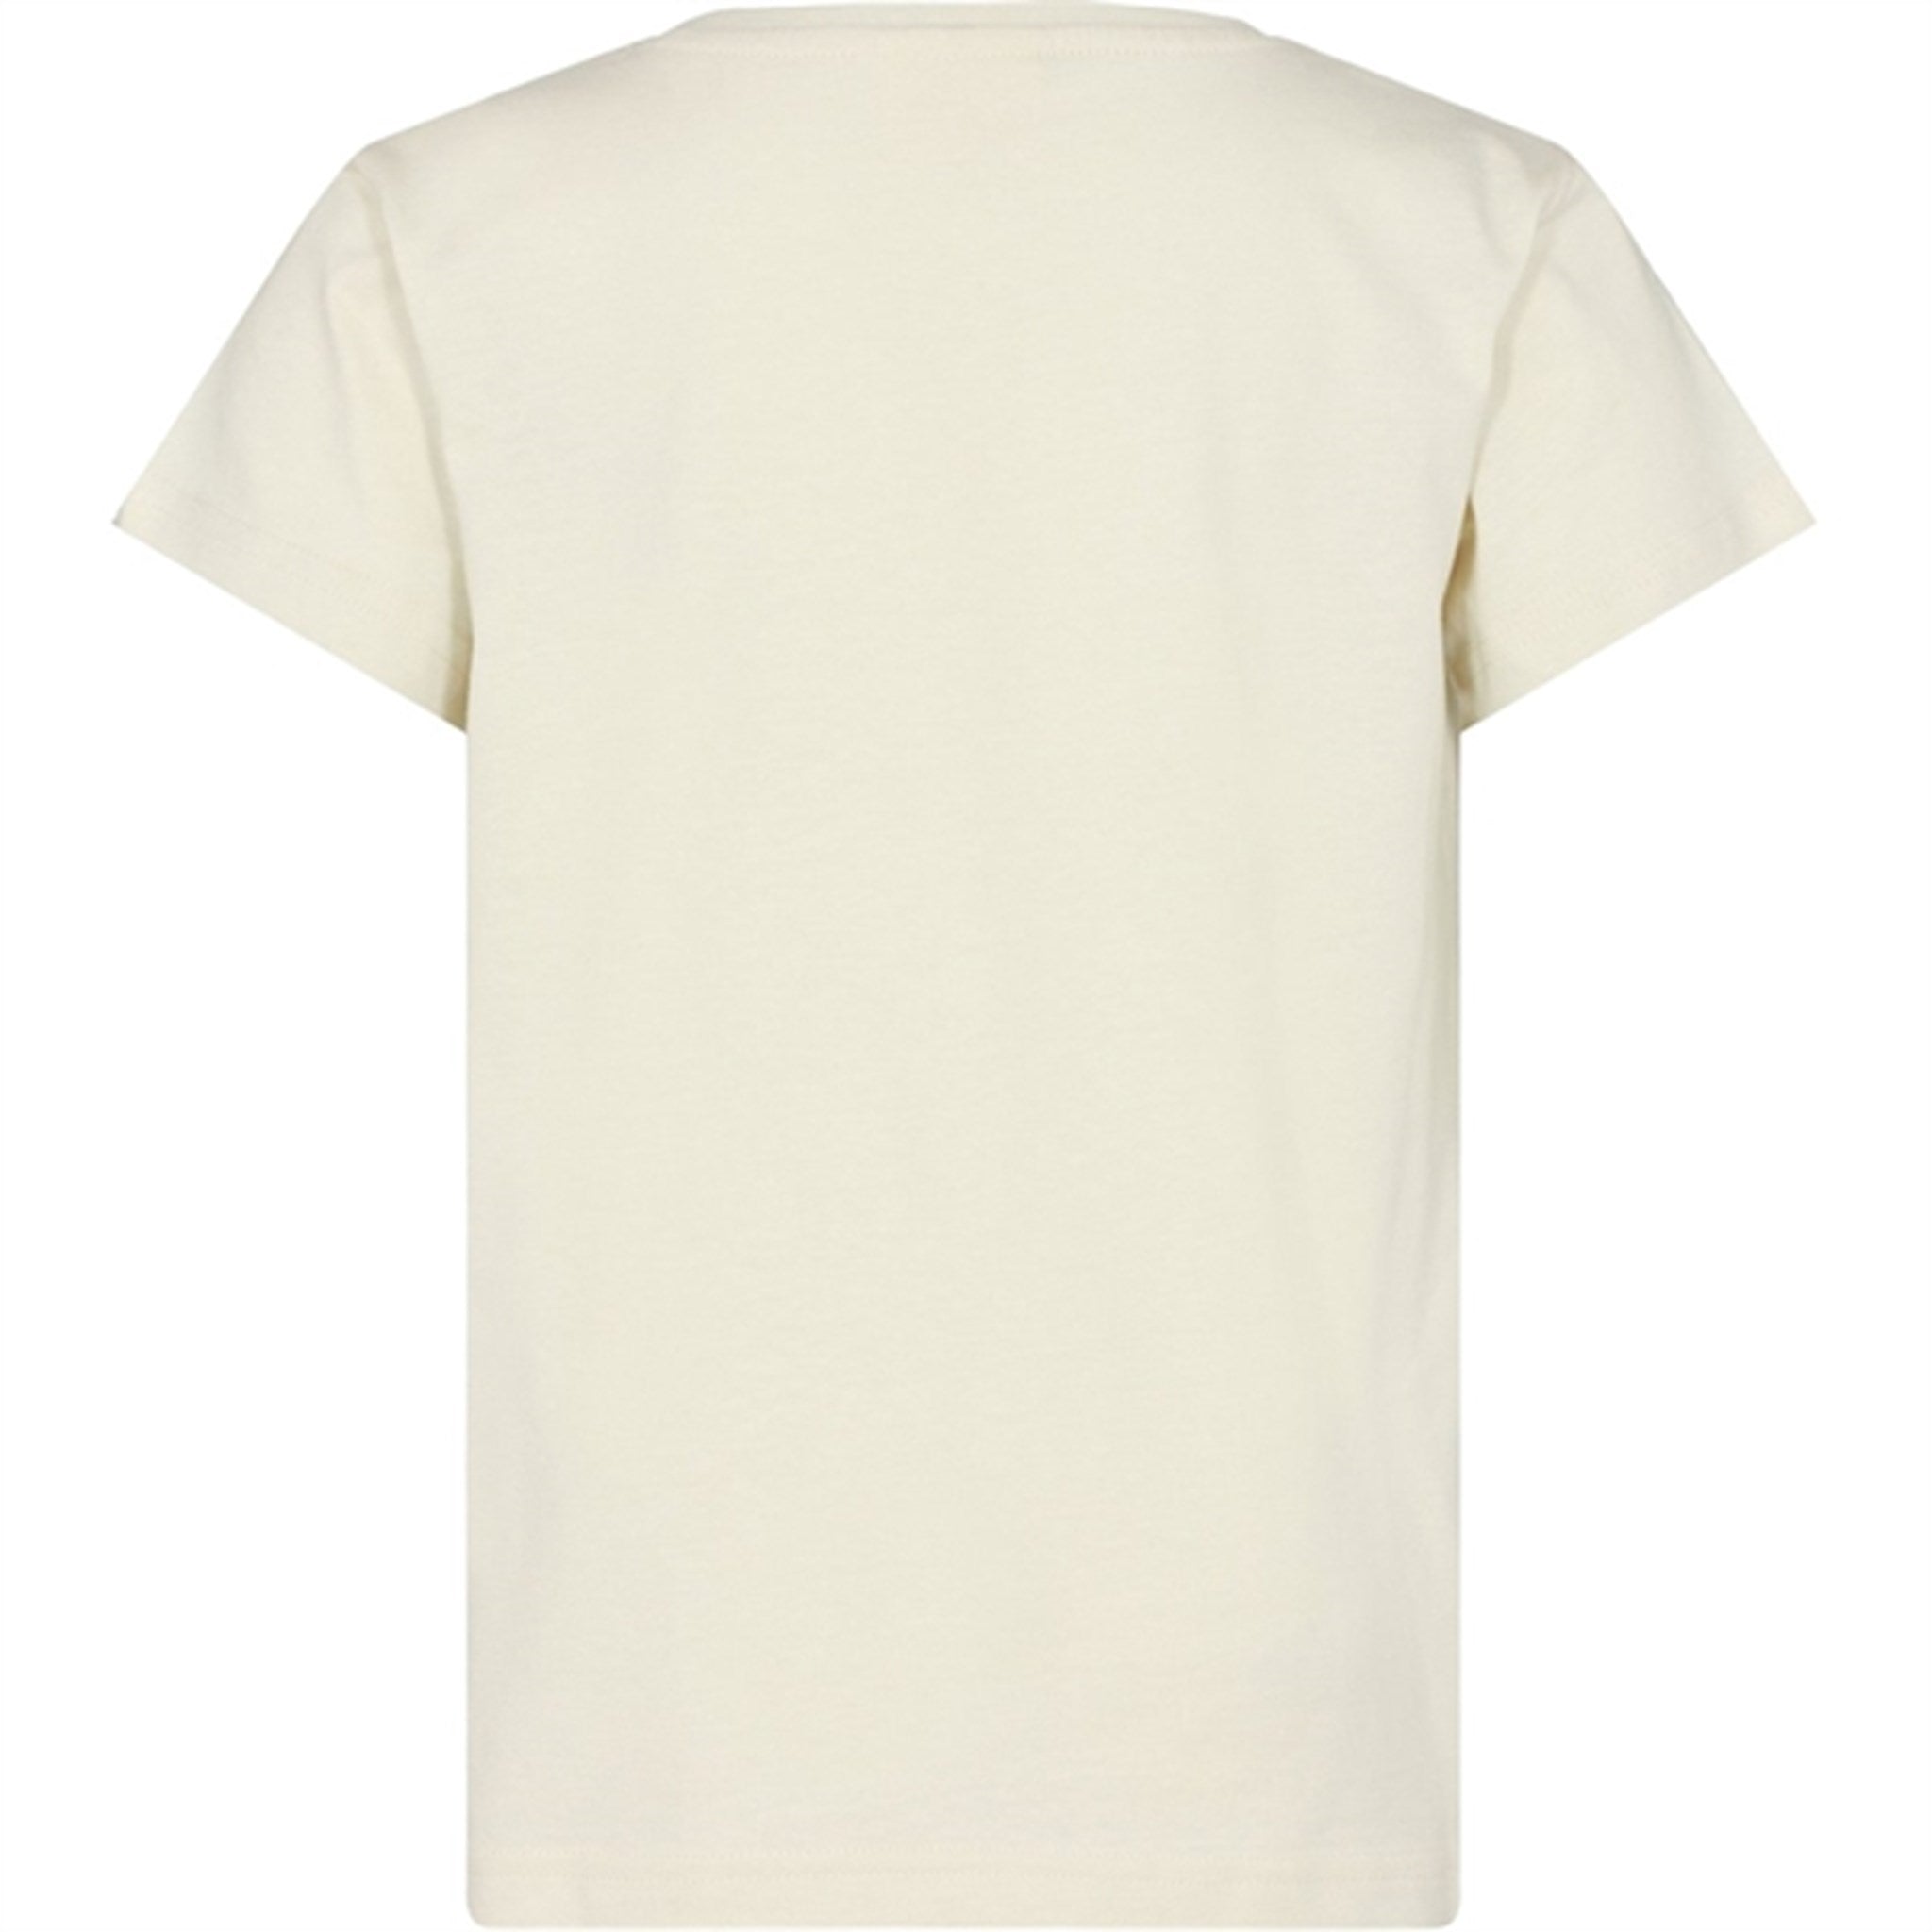 Sofie Schnoor Antique White T-shirt 3